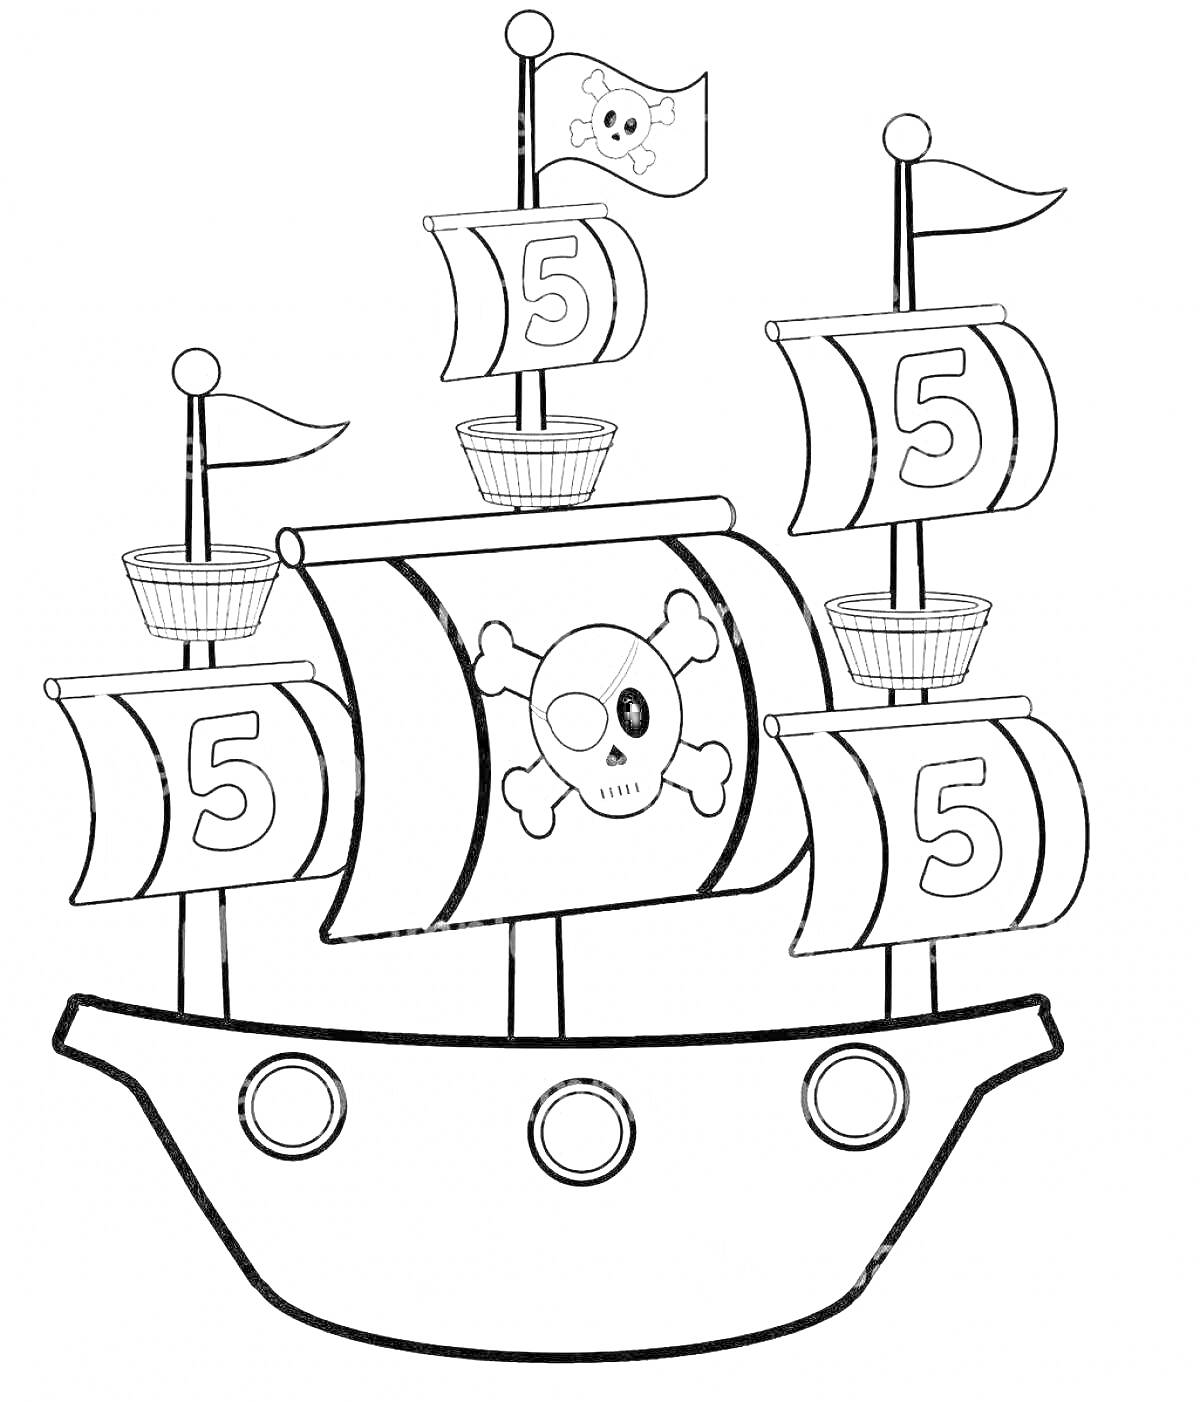 Раскраска Пиратский корабль с парусами с цифрой пять и пиратским флагом с черепом